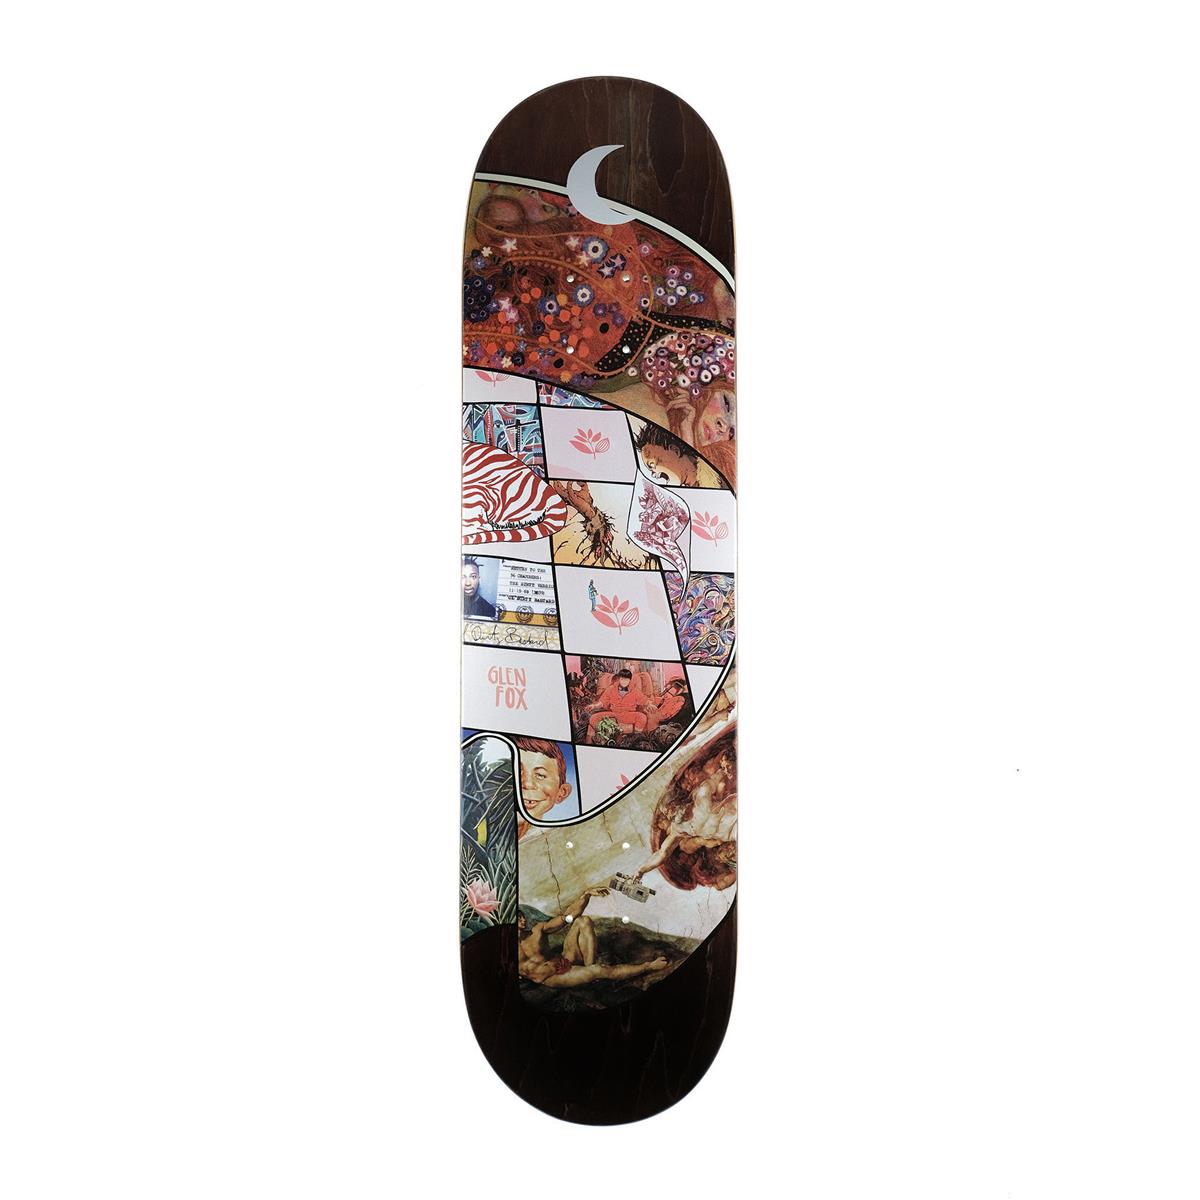 Magenta Skateboards - SÉRIE GLEN FOX MUSEUM